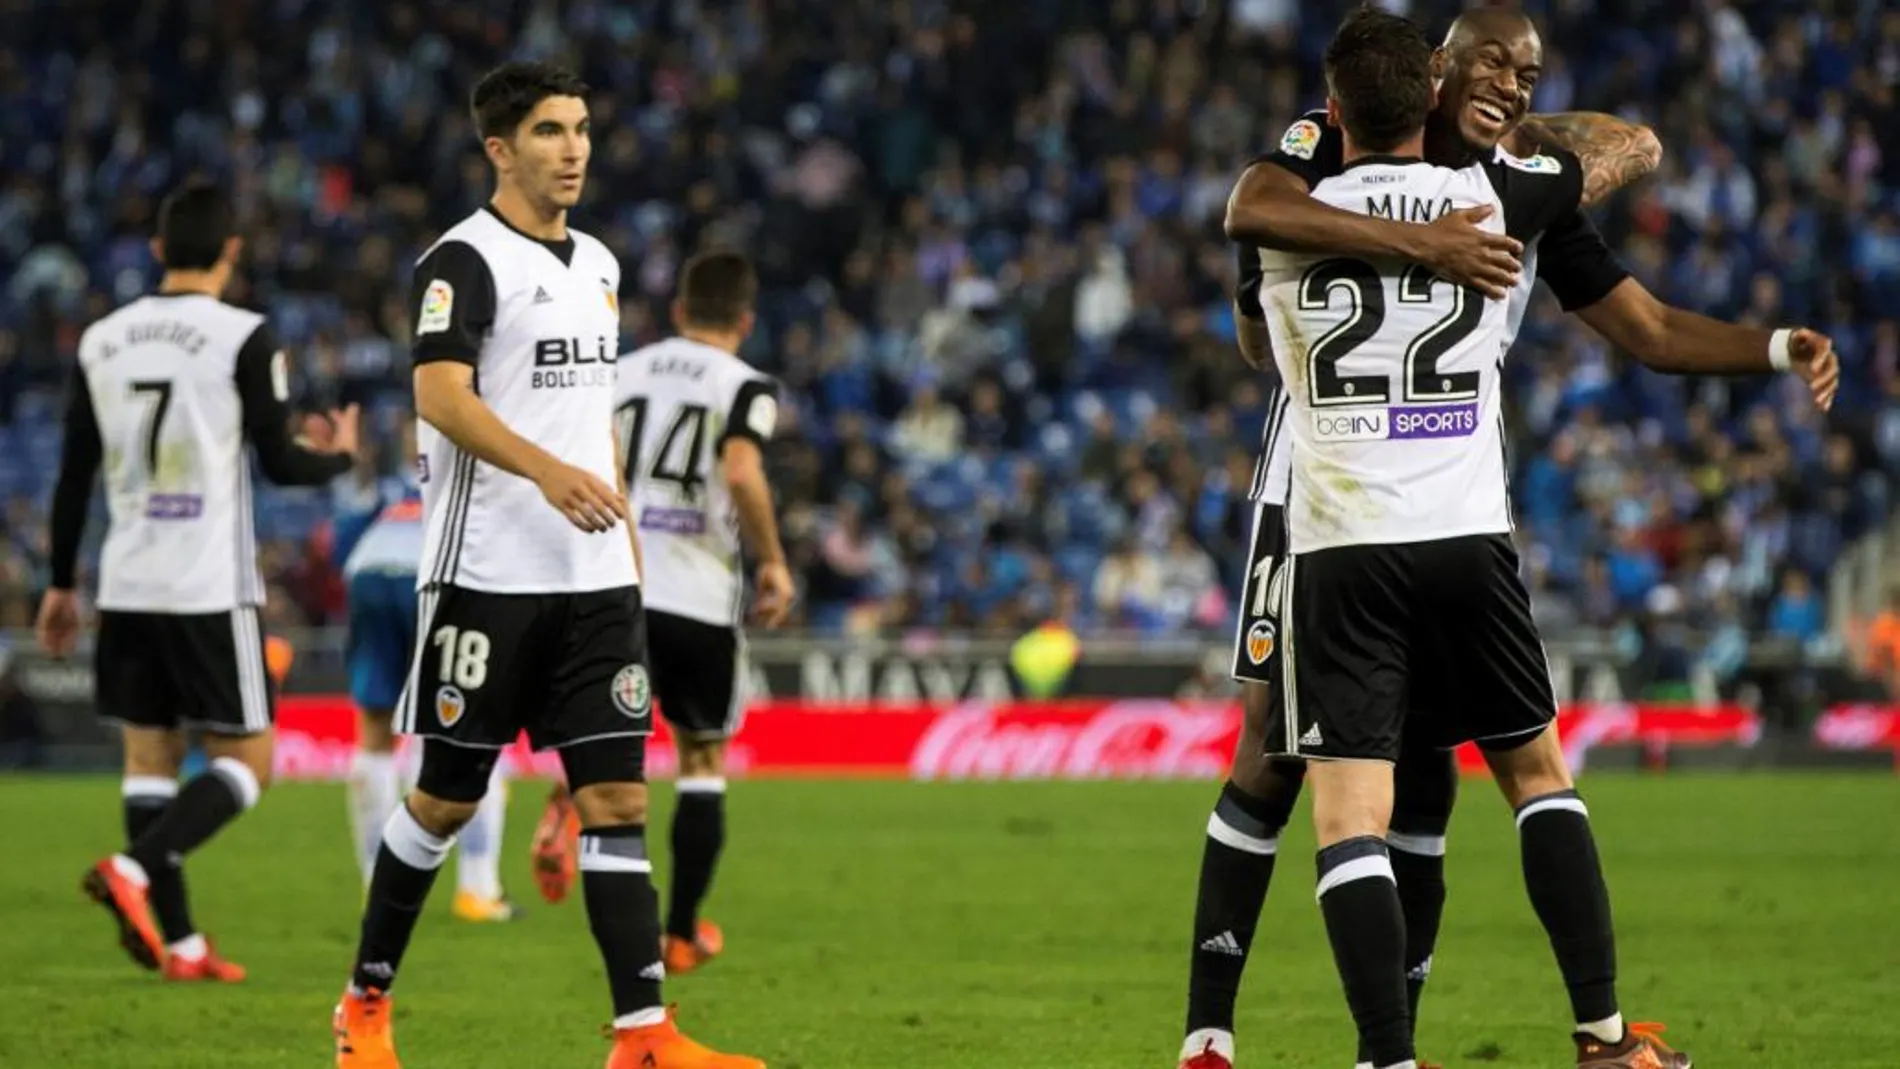 El delantero del Valencia Santi Mina celebra con su compañero Geoffrey Kondogbia su gol marcado ante el Espanyol, el segundo del conjunto ché